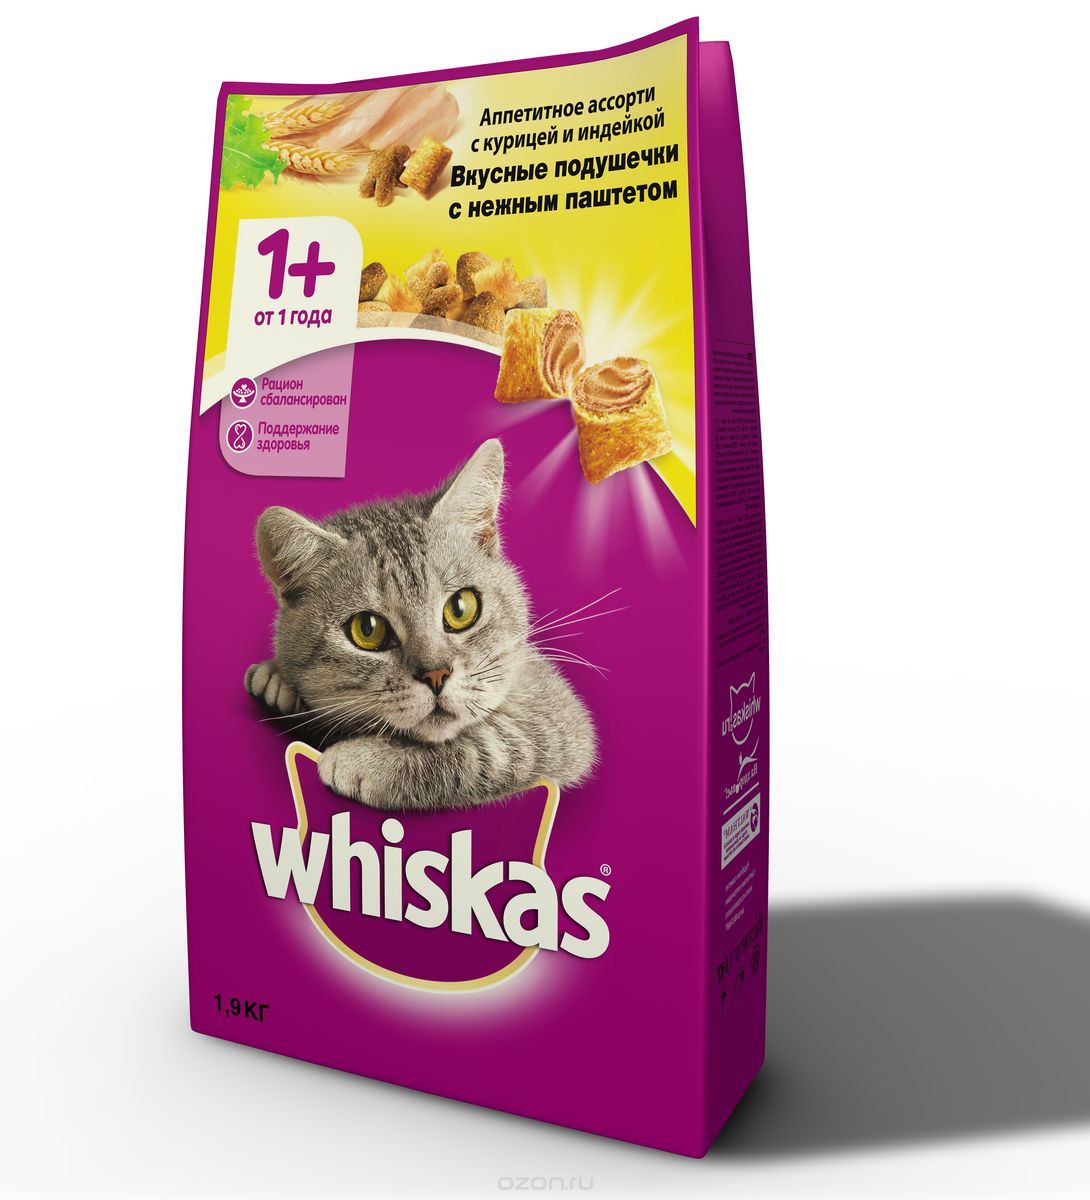 WHISKAS® (Вискас) сухой корм для кошек от 1 года Аппетитное ассорти  курица/индейка 1,9 кг – купить в интернет зоомагазине РыжийКот56.рф